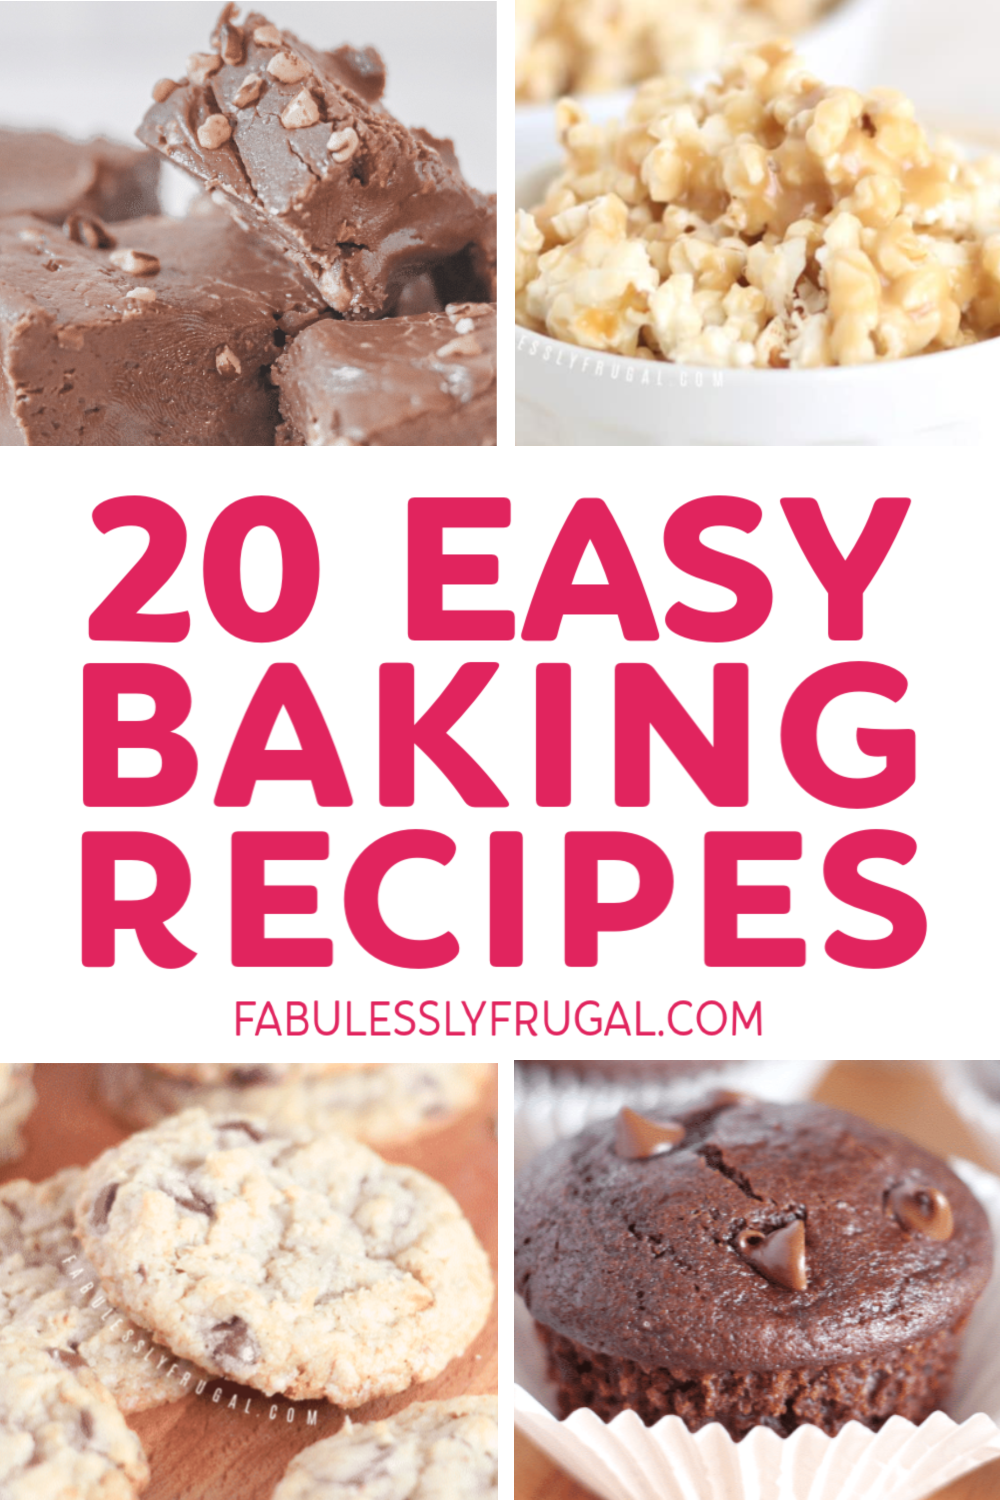 Easy baking recipes